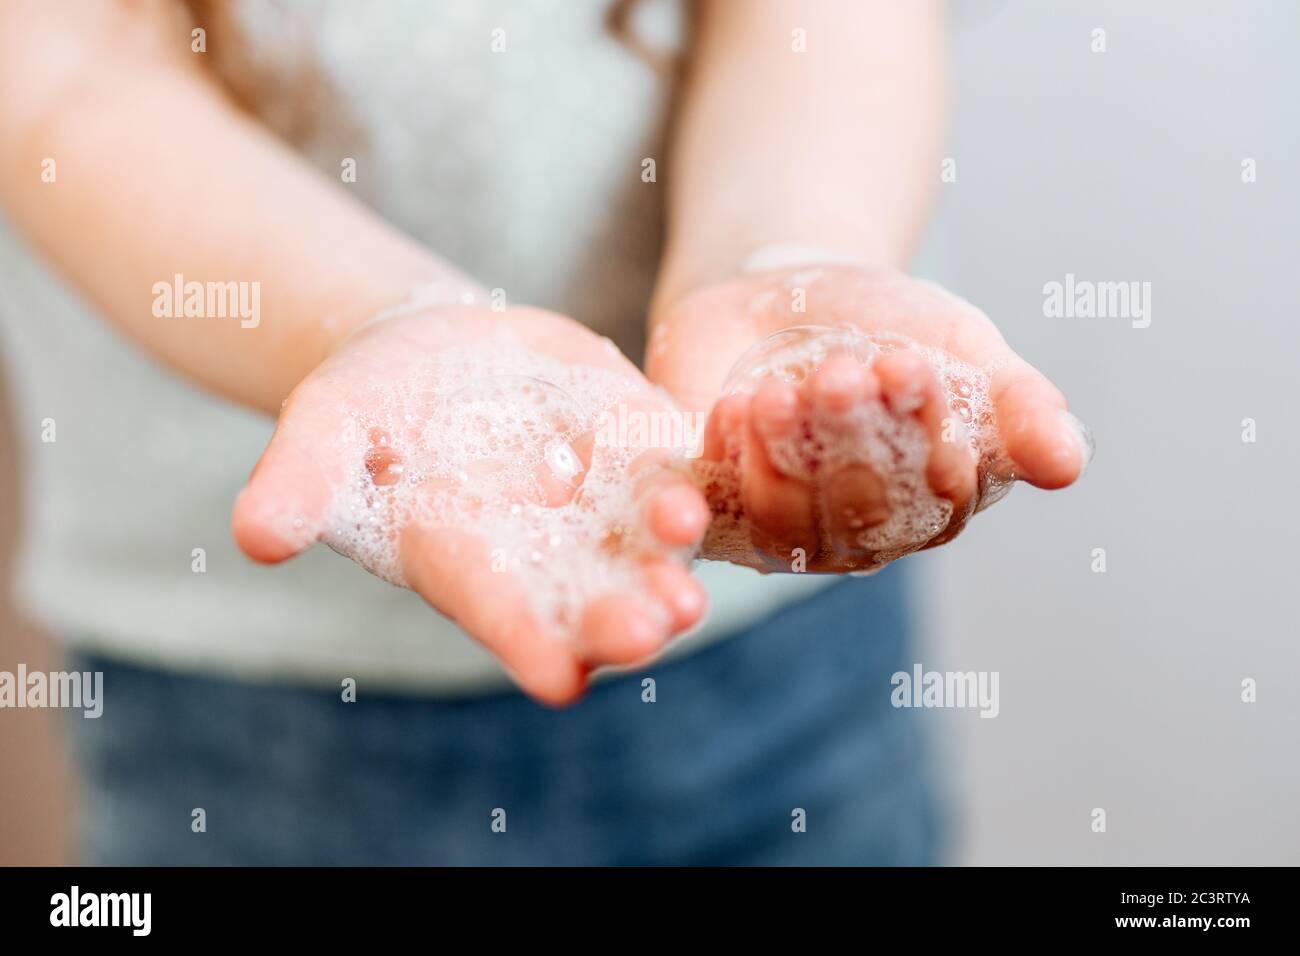 Mains d'enfants en mousse savonneuse. Concept mains propres. Hygiène et santé Banque D'Images